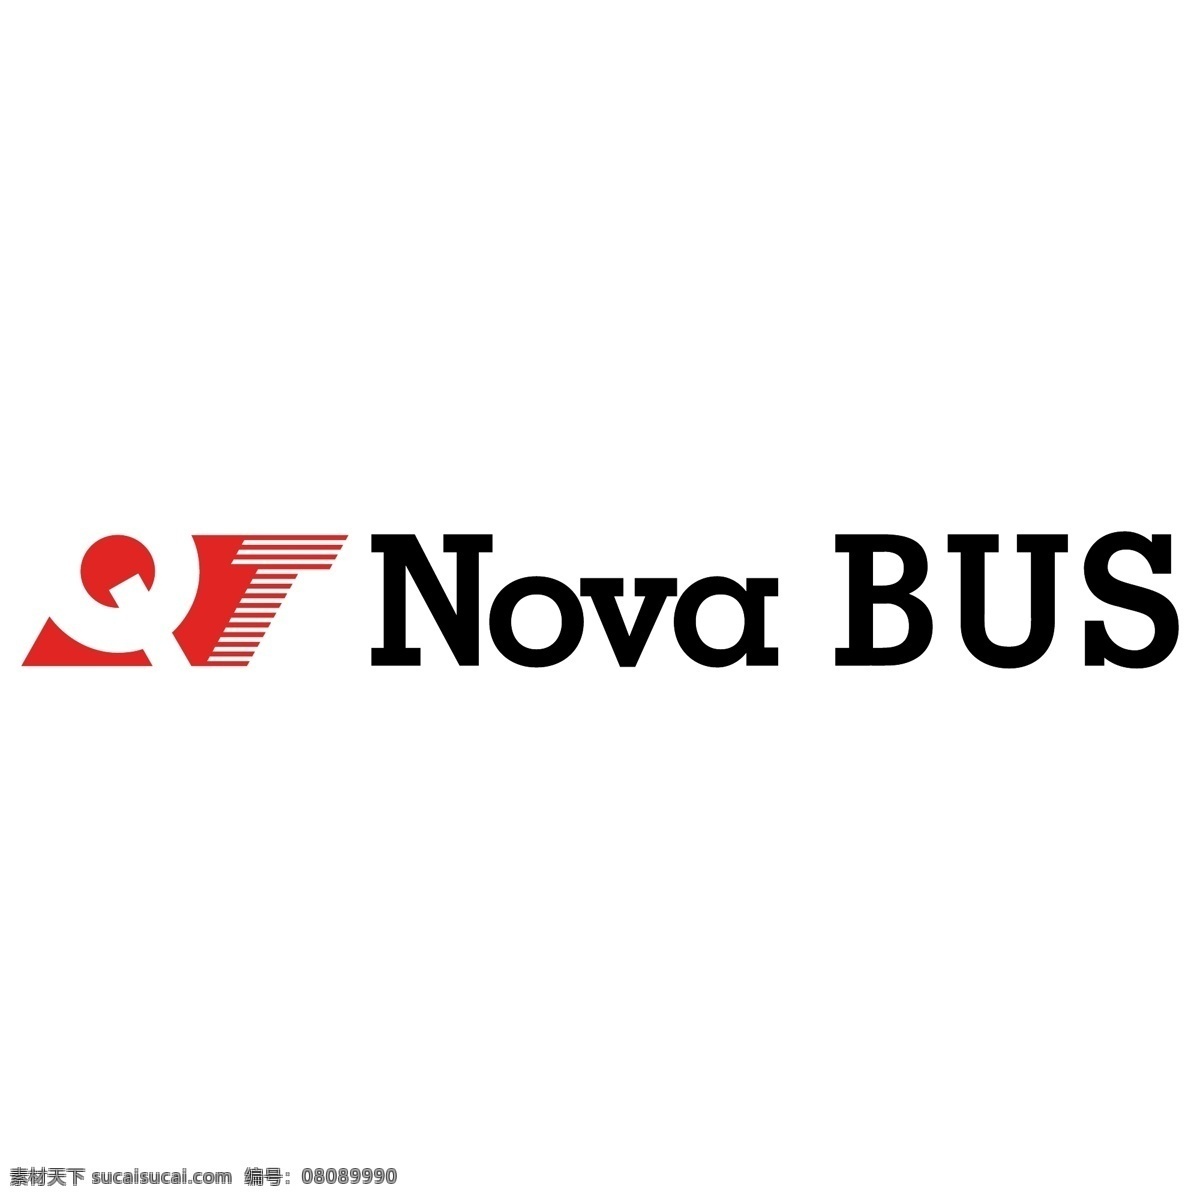 新 公共 汽车 免费 新星 巴士 标志 psd源文件 logo设计